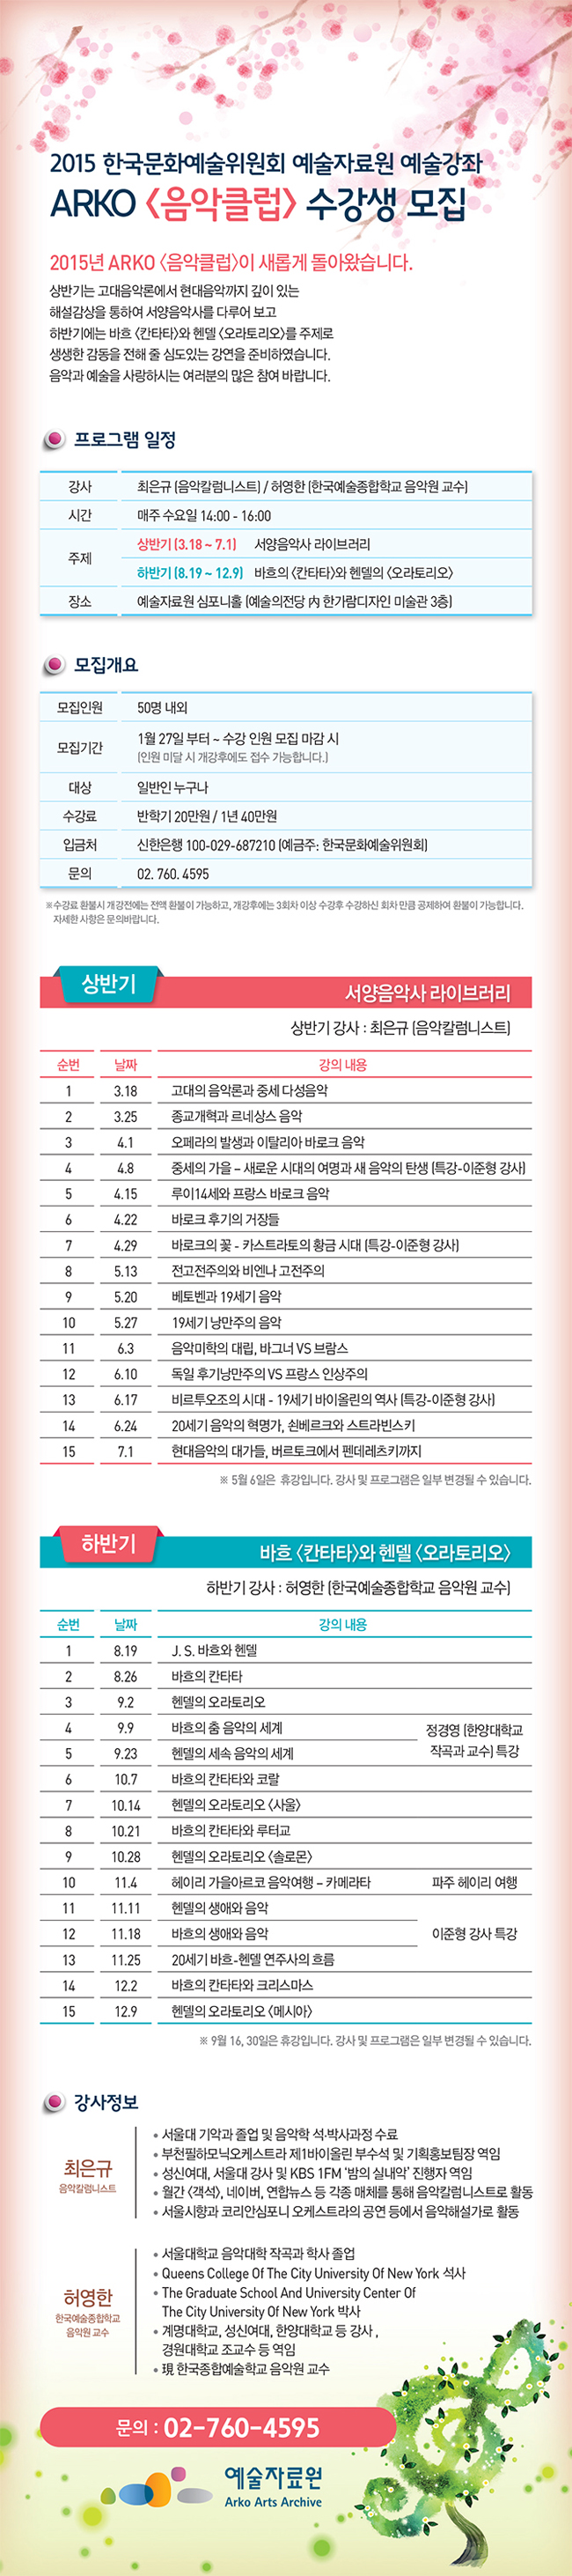 2015 한국문화예술위원회 예술자료원 예술강좌 ARKO [음악클럽] 수강생 모집